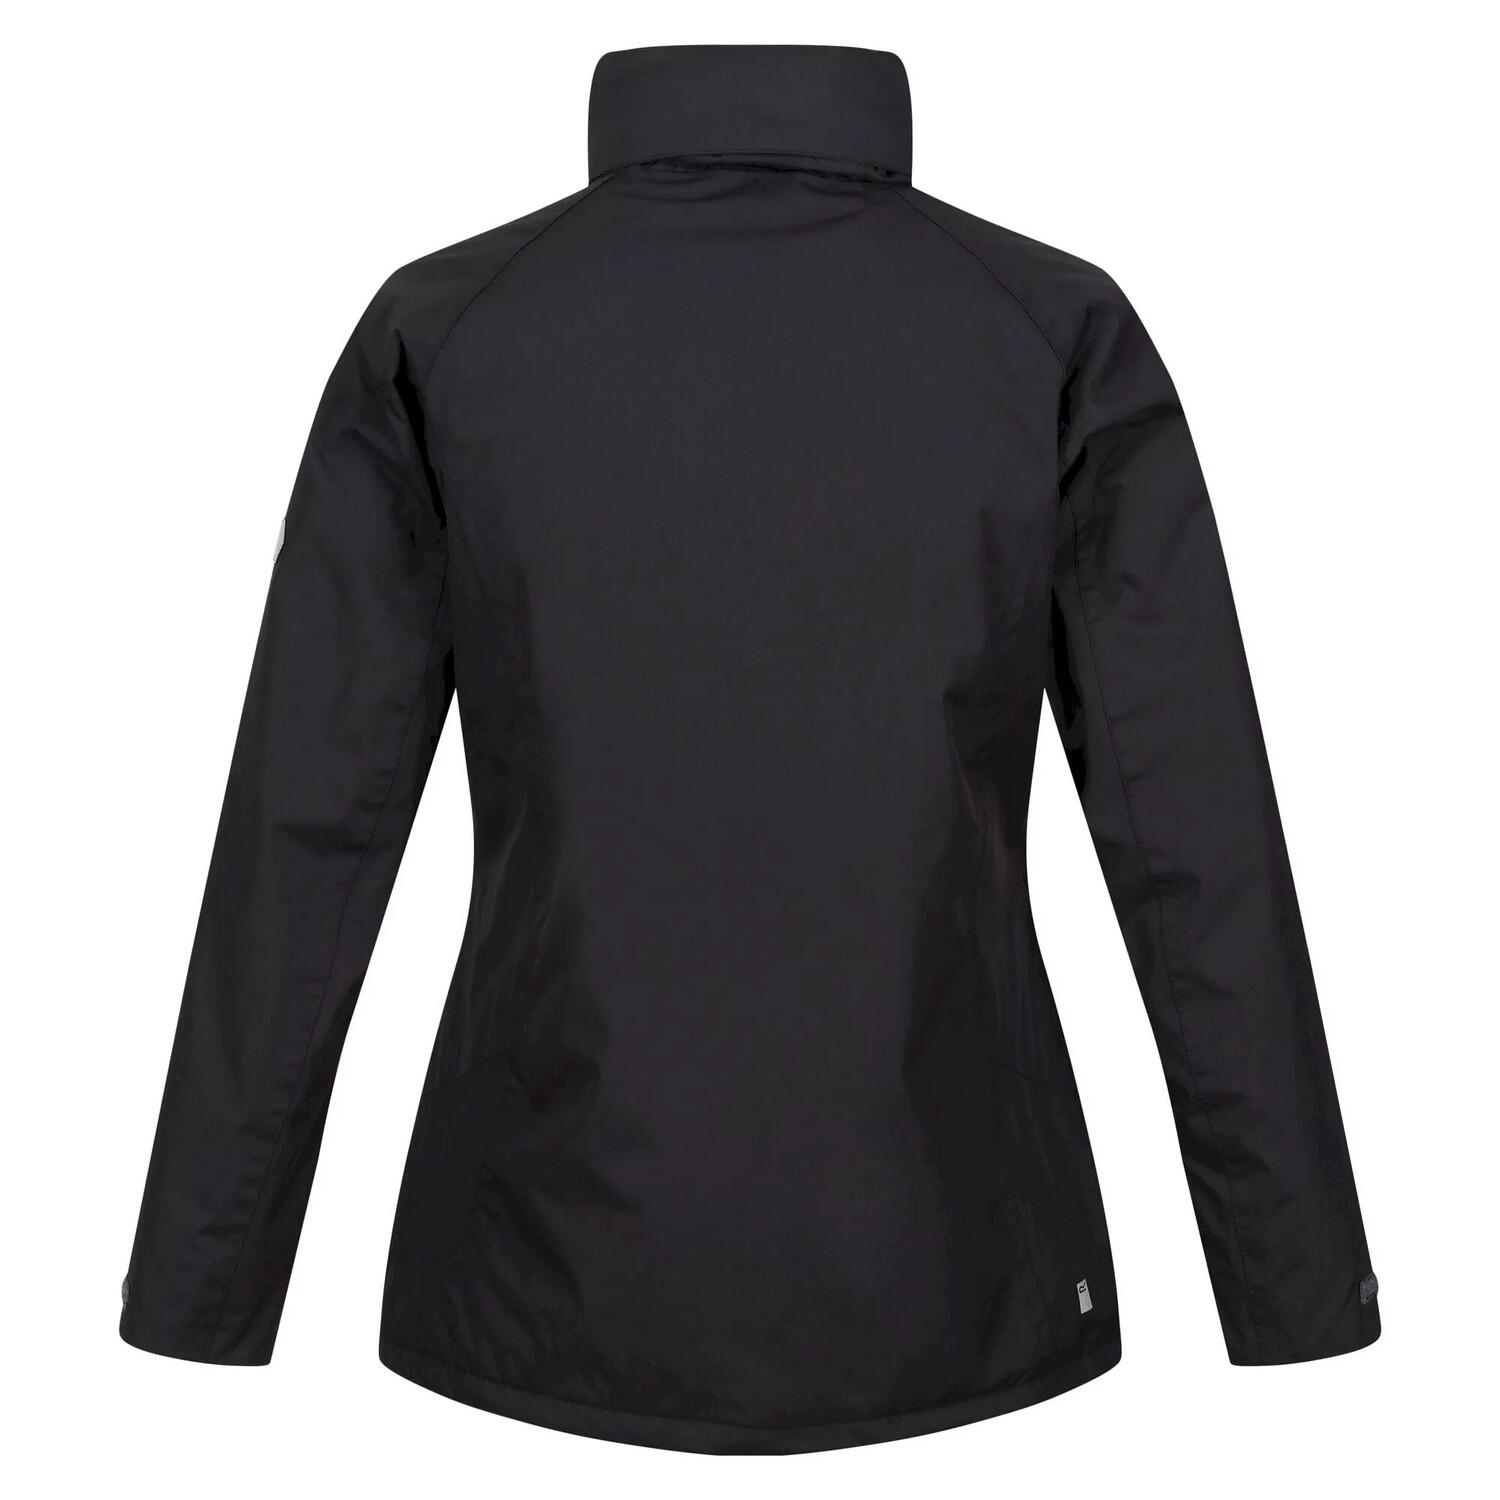 Womens/Ladies Calderdale Winter Waterproof Jacket (Black) 2/5